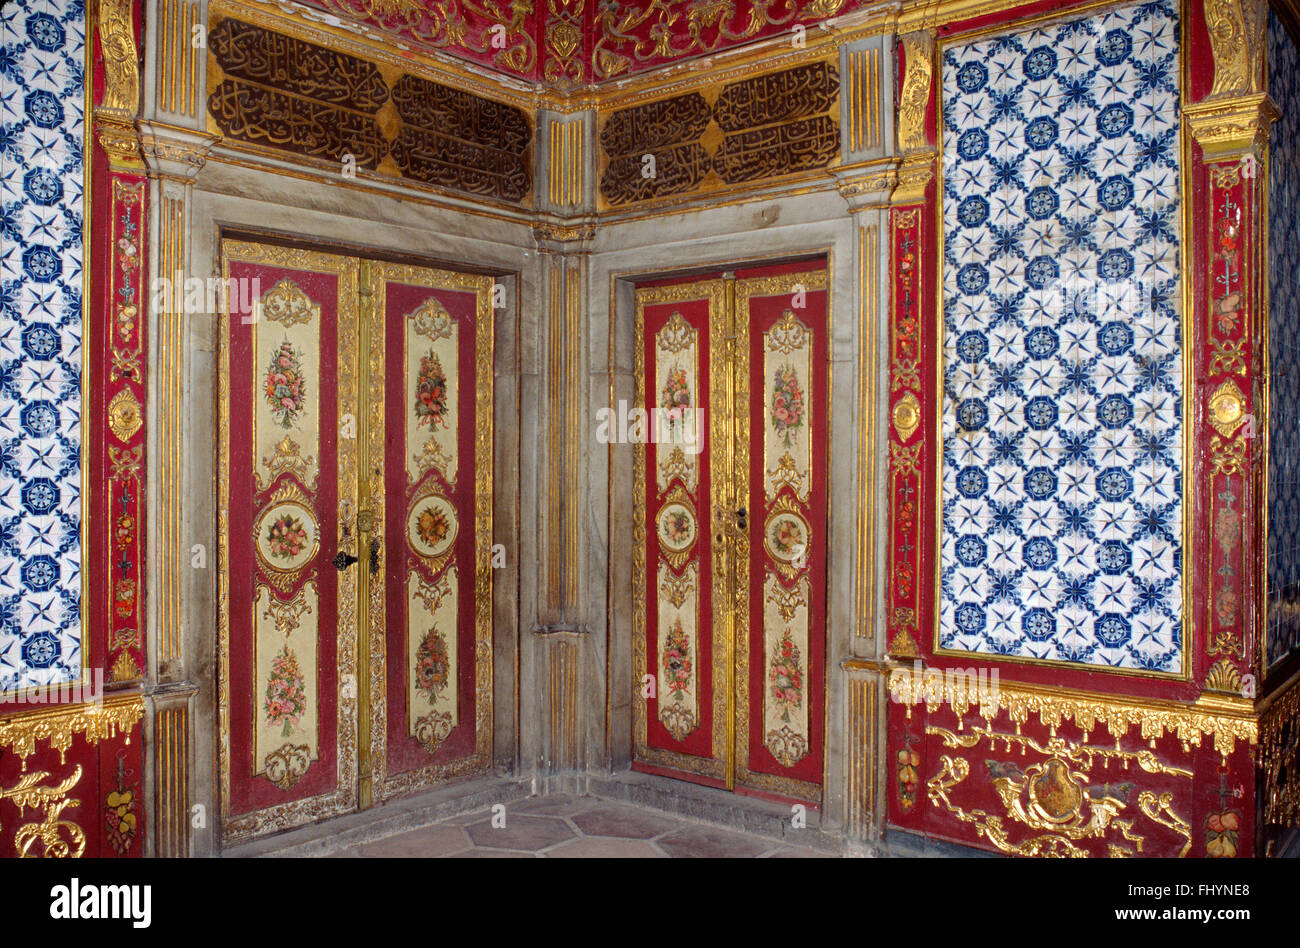 Uno dei bellissimi dipinti, piastrellati e decorate camere salotto dell'Harem - Il Palazzo di Topkapi (Impero ottomano), Istanbul Foto Stock